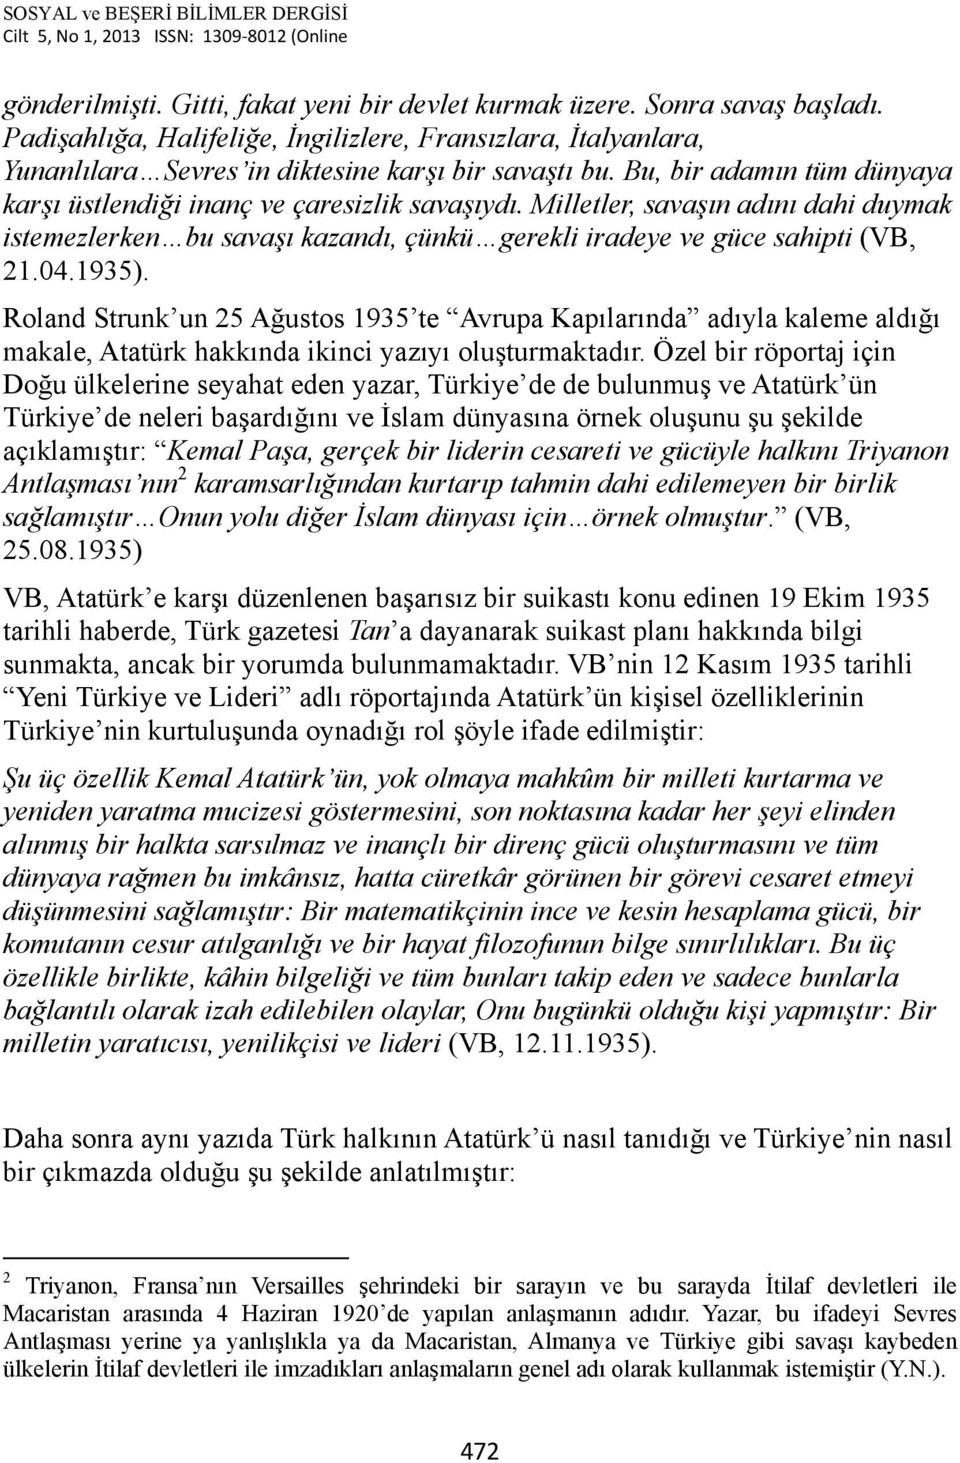 Roland Strunk un 25 Ağustos 1935 te Avrupa Kapılarında adıyla kaleme aldığı makale, Atatürk hakkında ikinci yazıyı oluşturmaktadır.